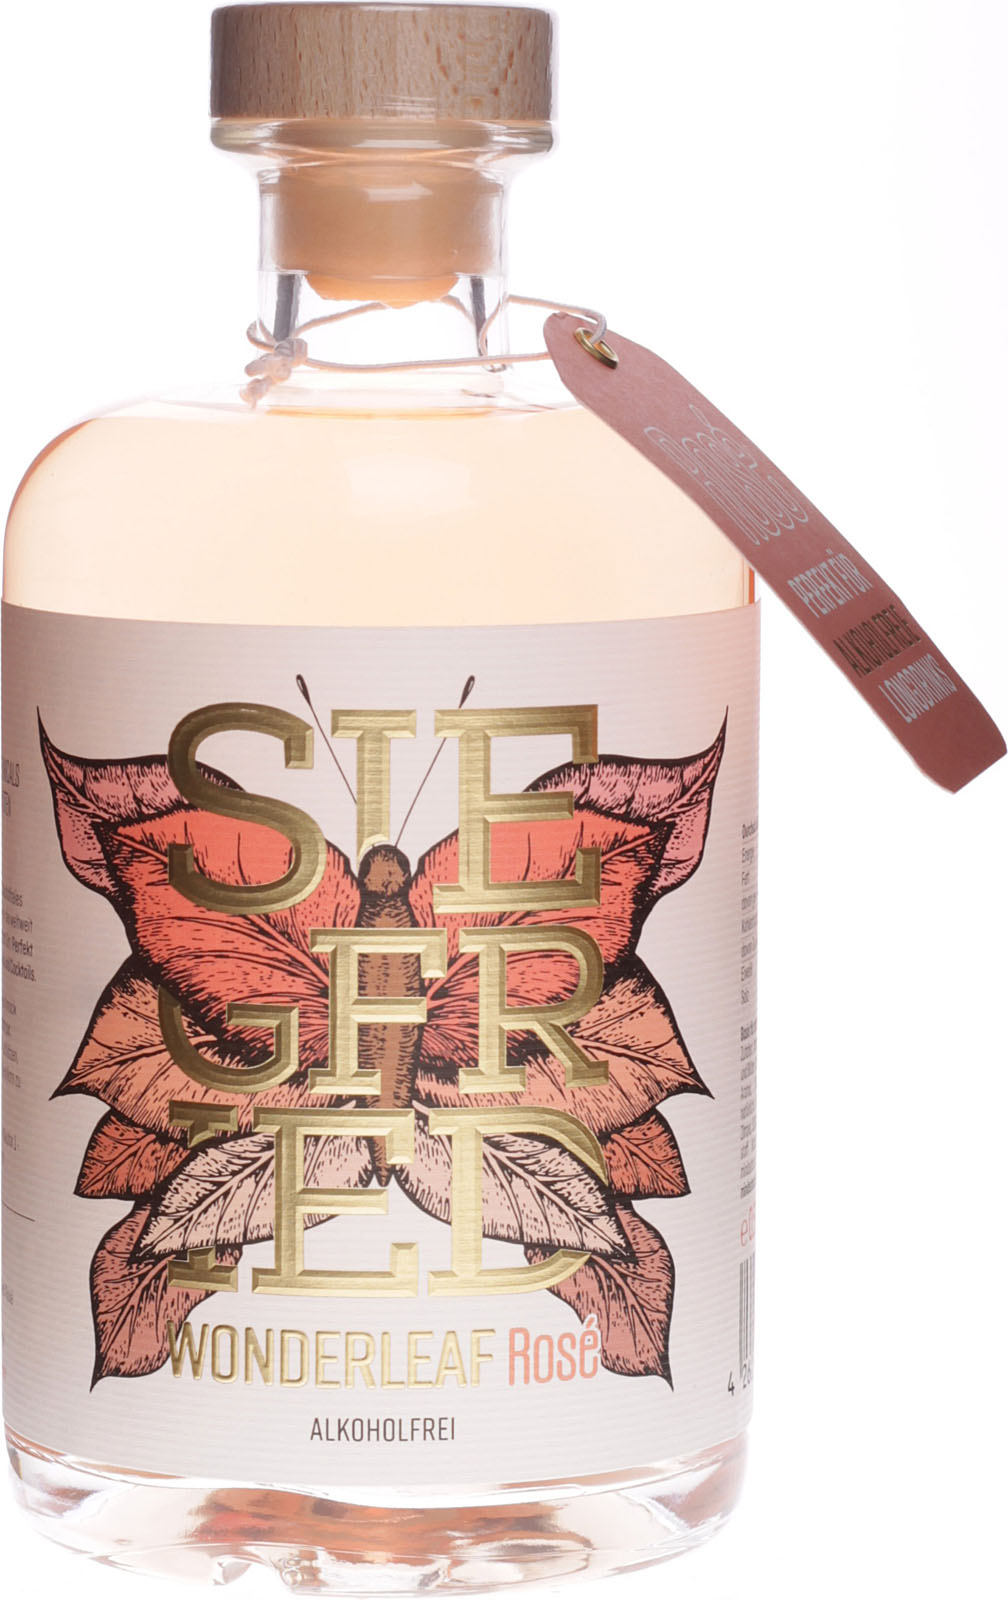 Shop Liter Wonderleaf im Siegfried alkoholfrei Rose 0,5